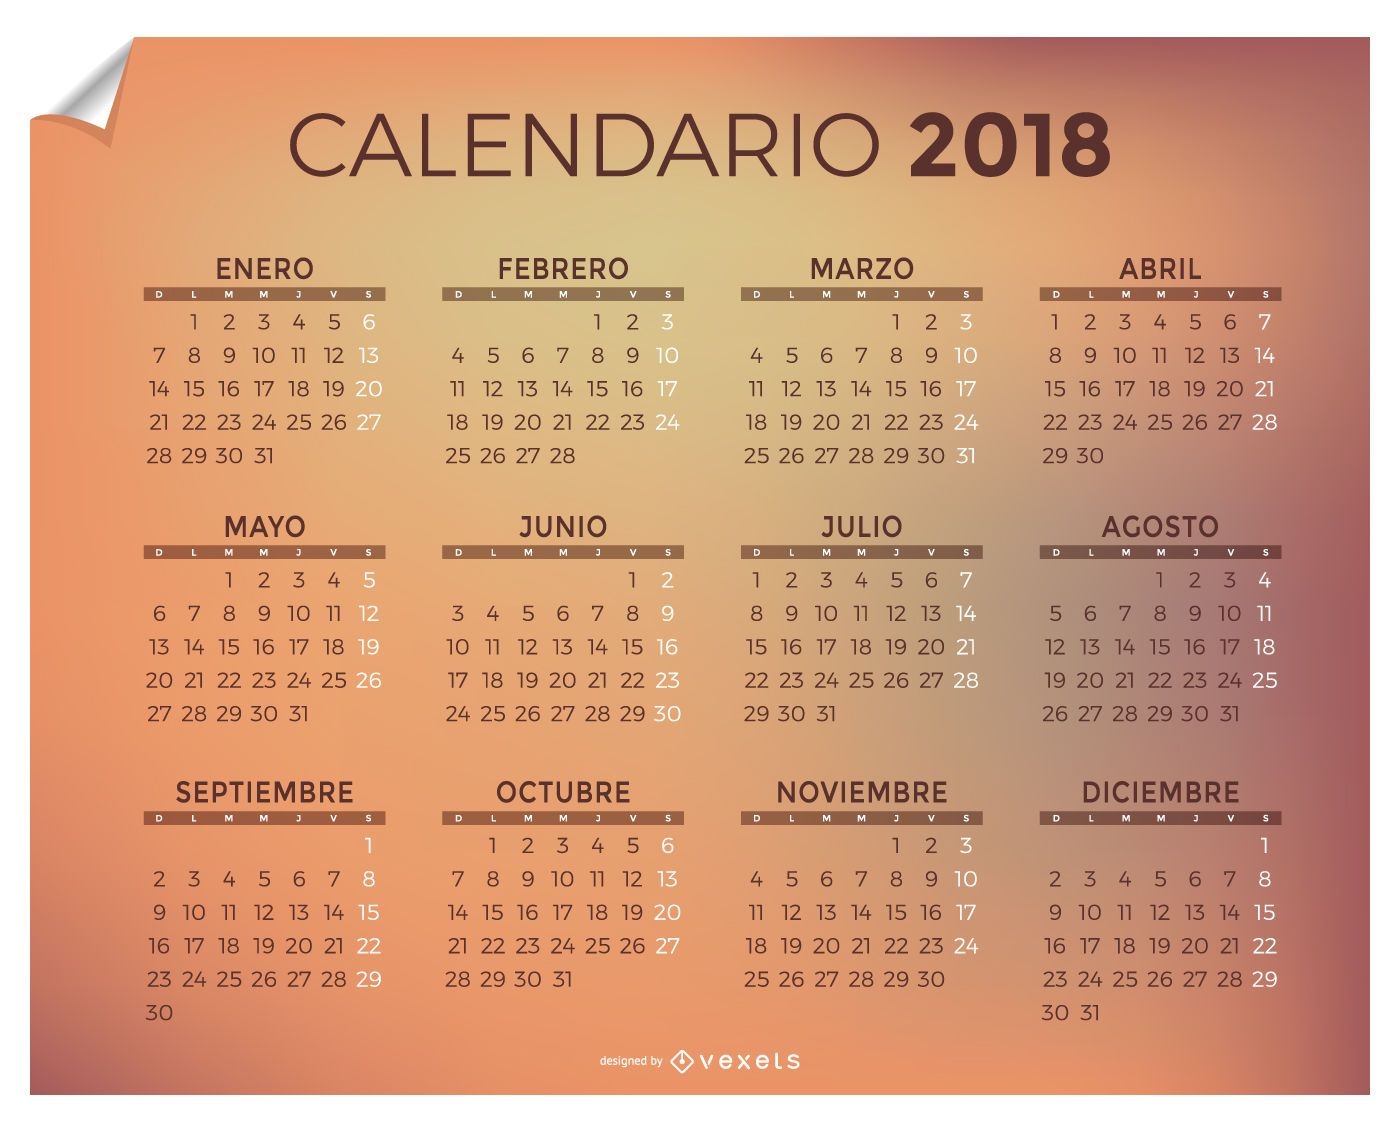 Calendario 2018 en espa?ol